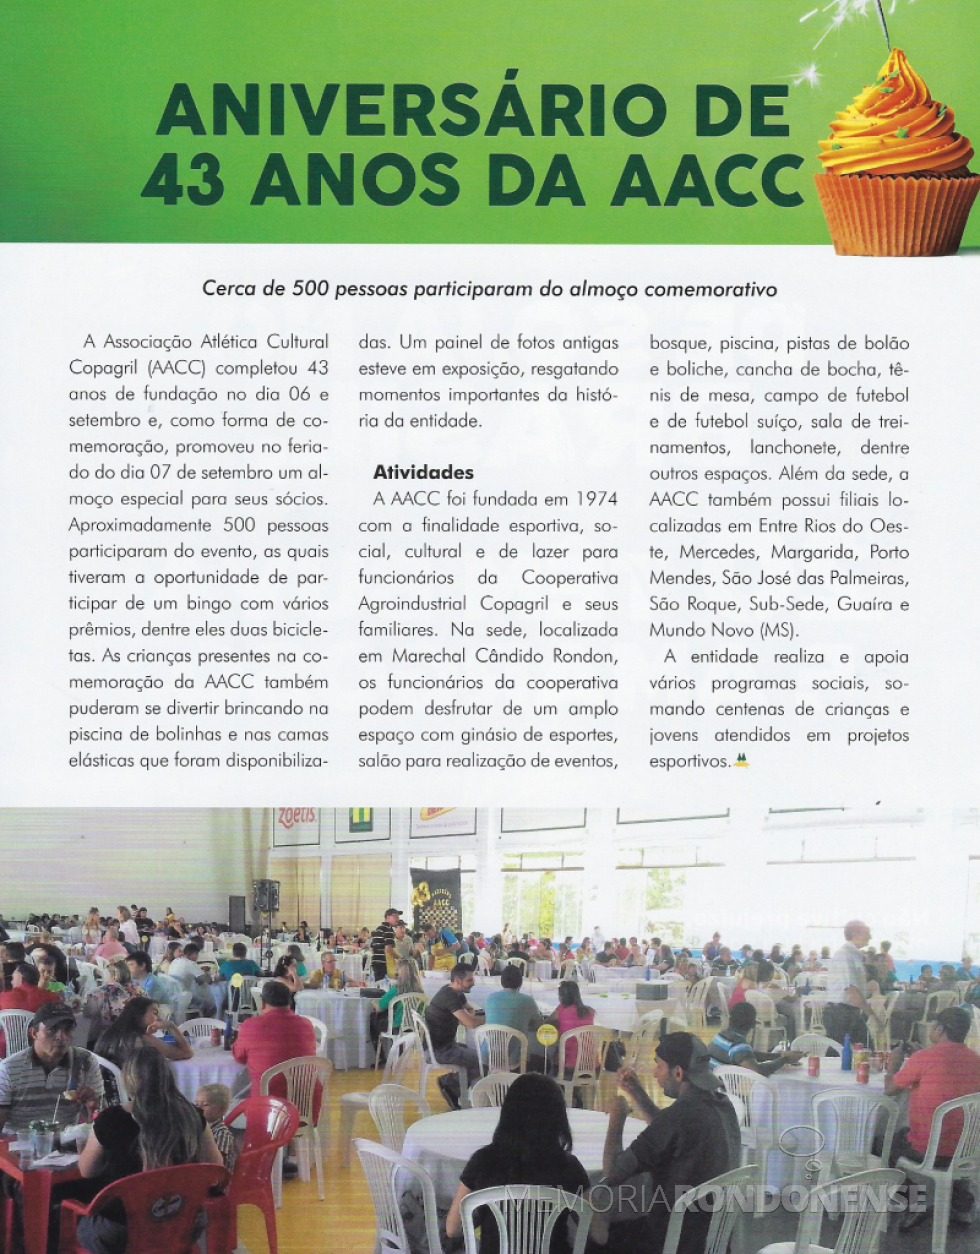 || Destaque da Revista Copagril sobre a comemoração do 43º aniversário da AACC. 
Imagem: Revista Copagril nº 100 - FOTO  12 - 